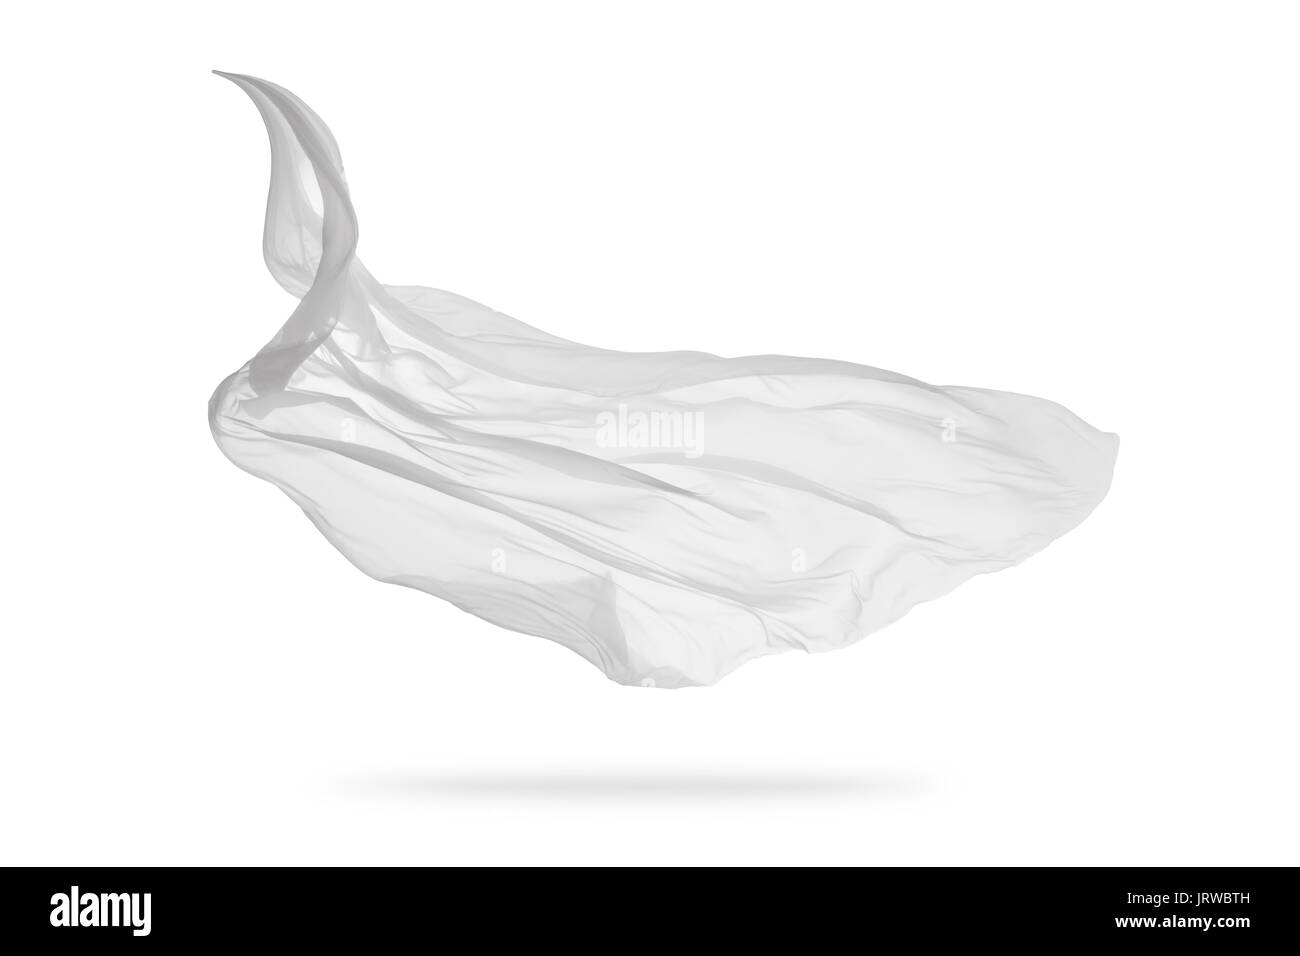 Glatt elegante weiße transparente Tuch auf weißem Hintergrund getrennt.  Textur des Fliegens Gewebe. Sehr hohe Auflösung Stockfotografie - Alamy